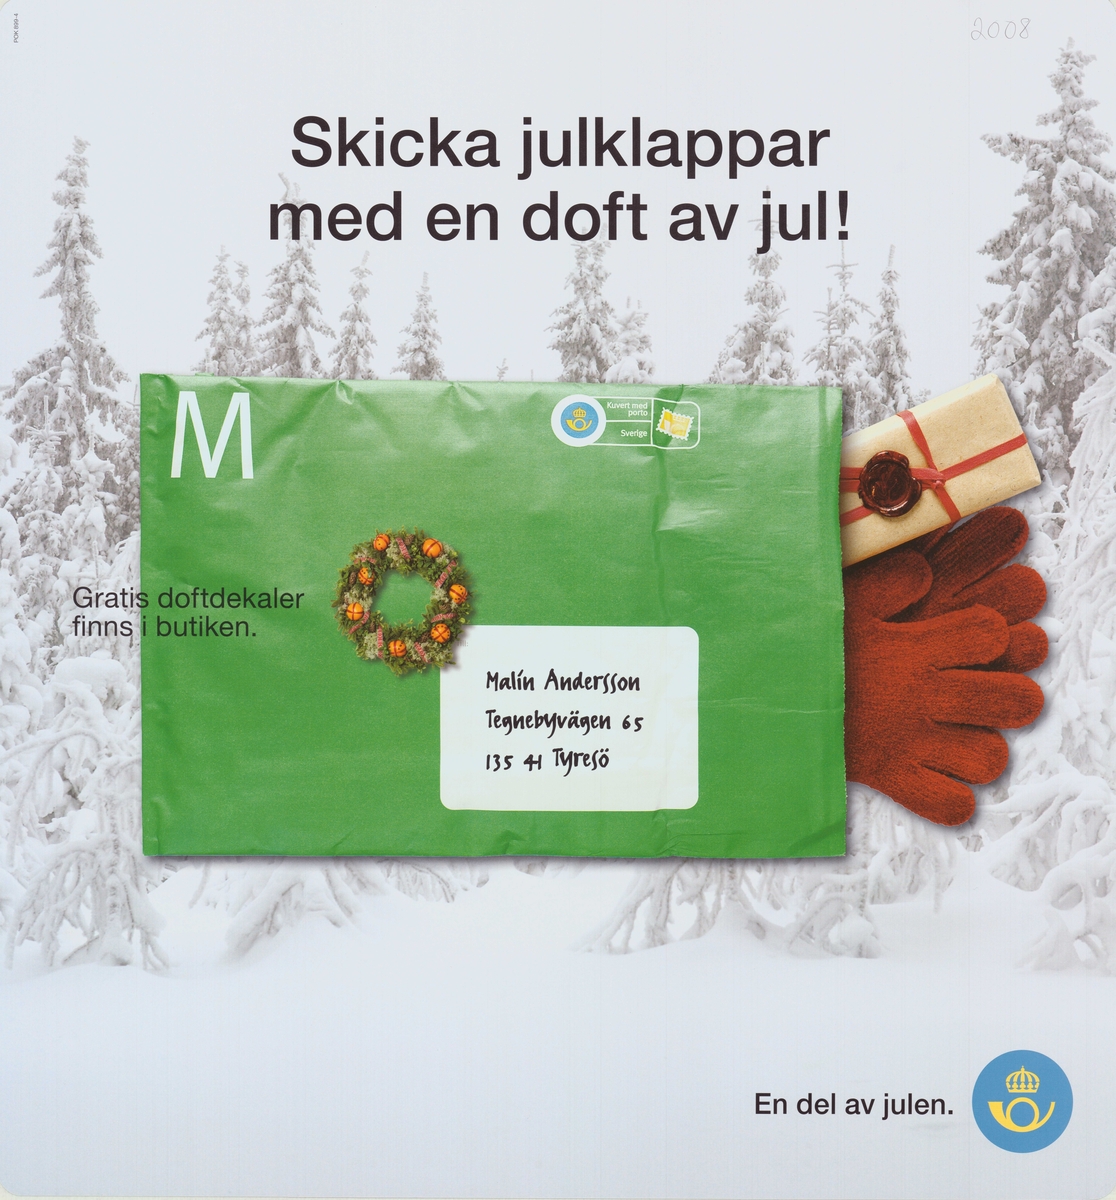 Postens förfrankerade förpackning med vantar och julklappar i. 

Postens ikonspråk.